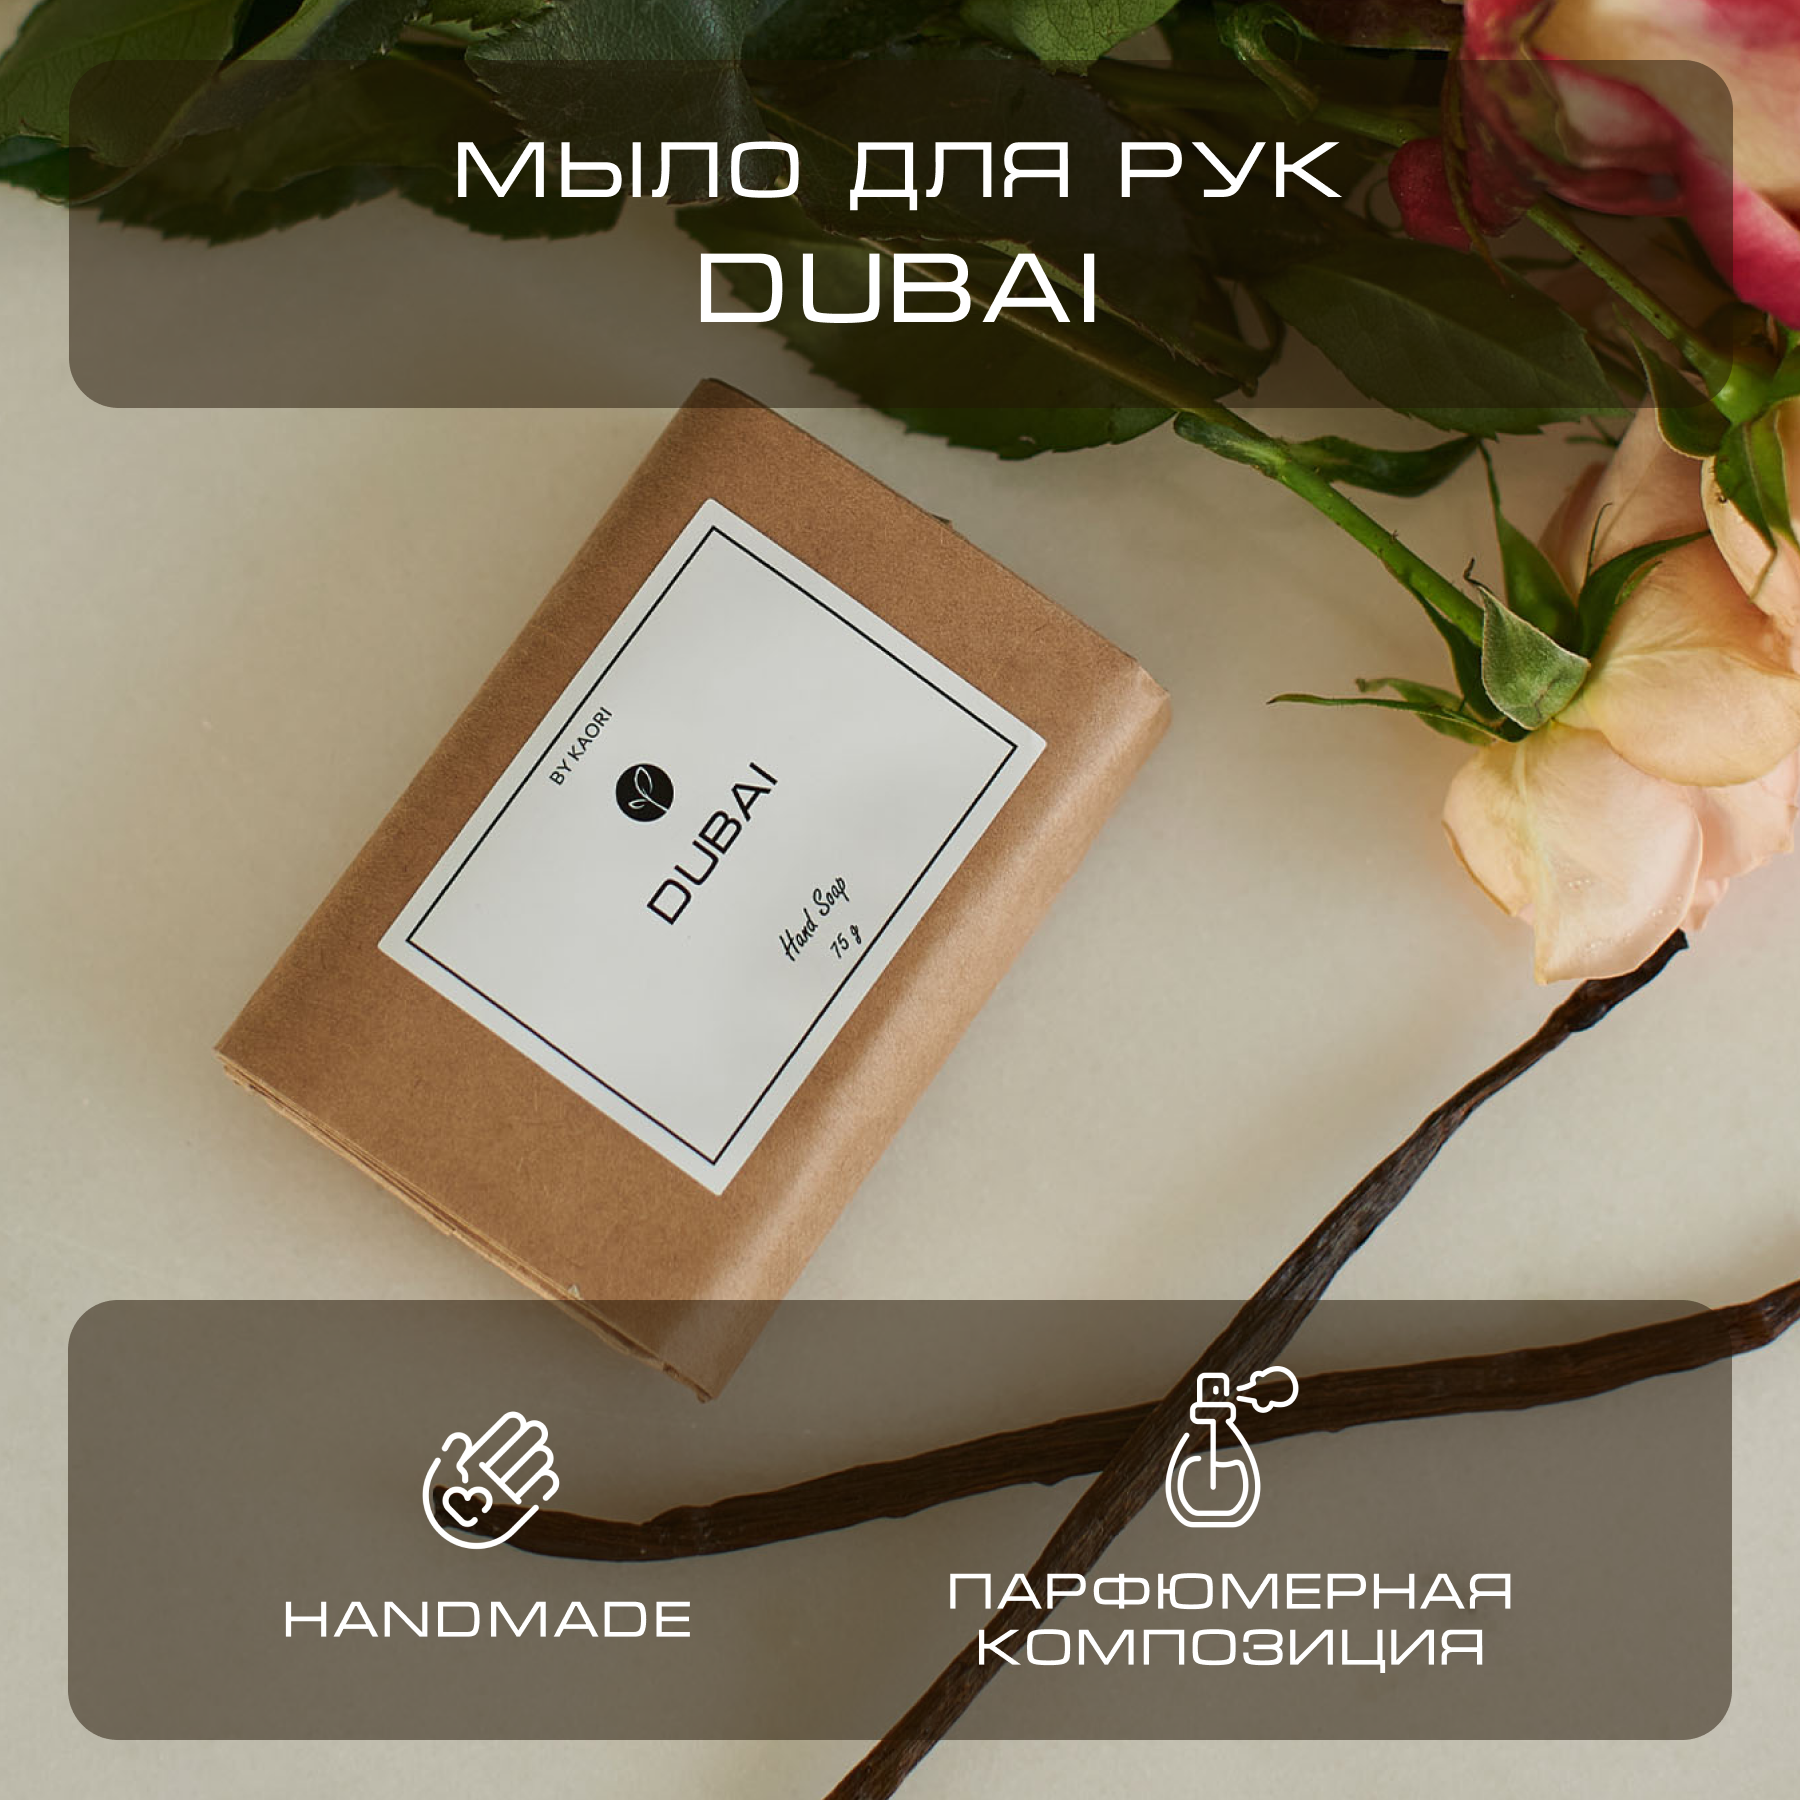 Мыло для рук твердое By Kaori парфюмированное туалетное аромат Dubai 75 г мыло для рук твердое by kaori парфюмированное туалетное аромат etna 75 г